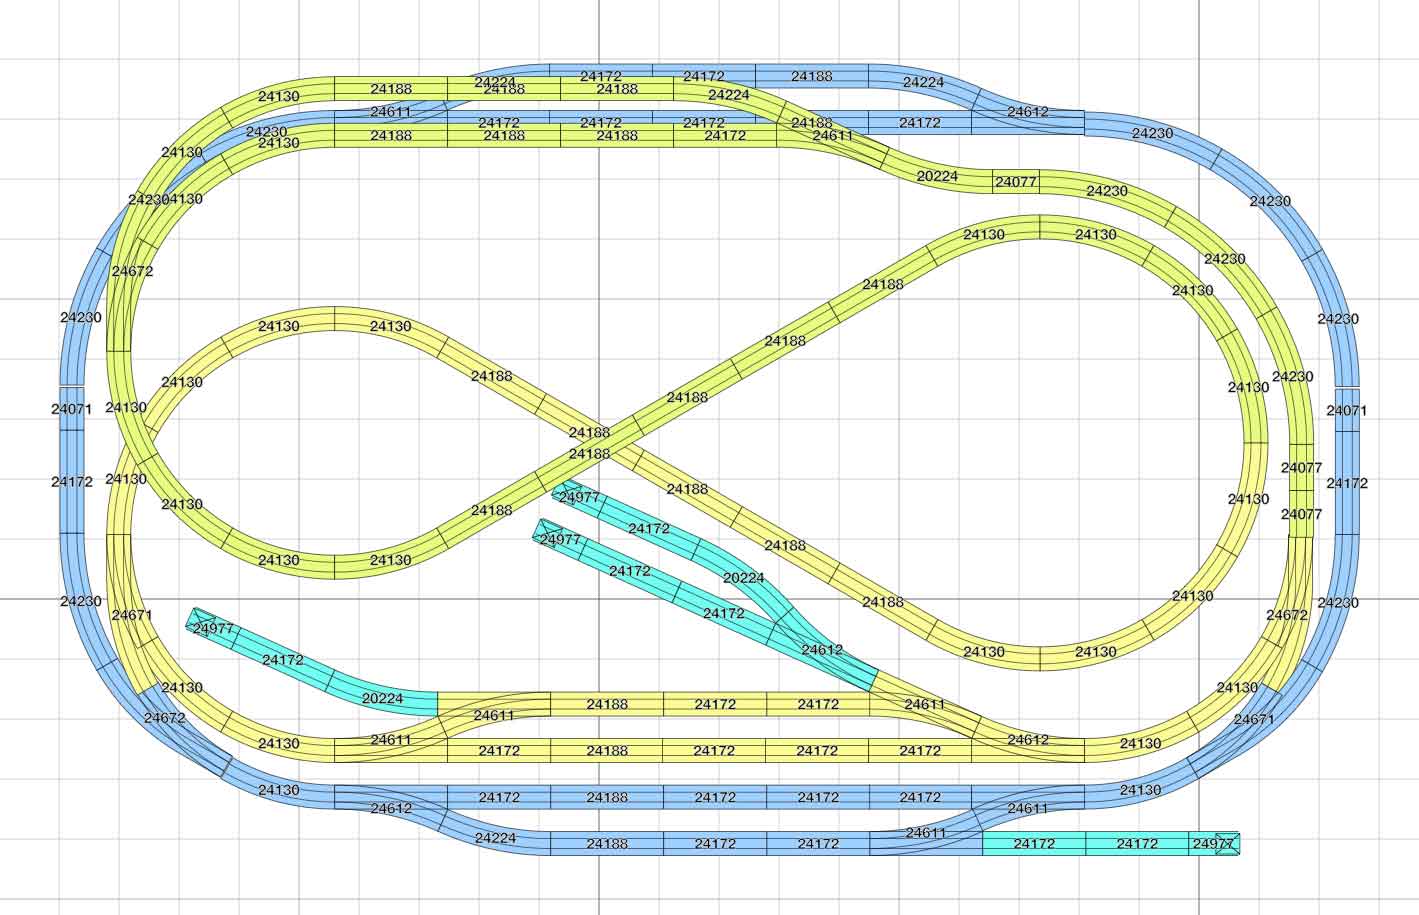 Abbildung des kompakter H0-Gleisplan mit 2 separaten Gleisstrecken auf 2,5 Meter x 1,5 Meter